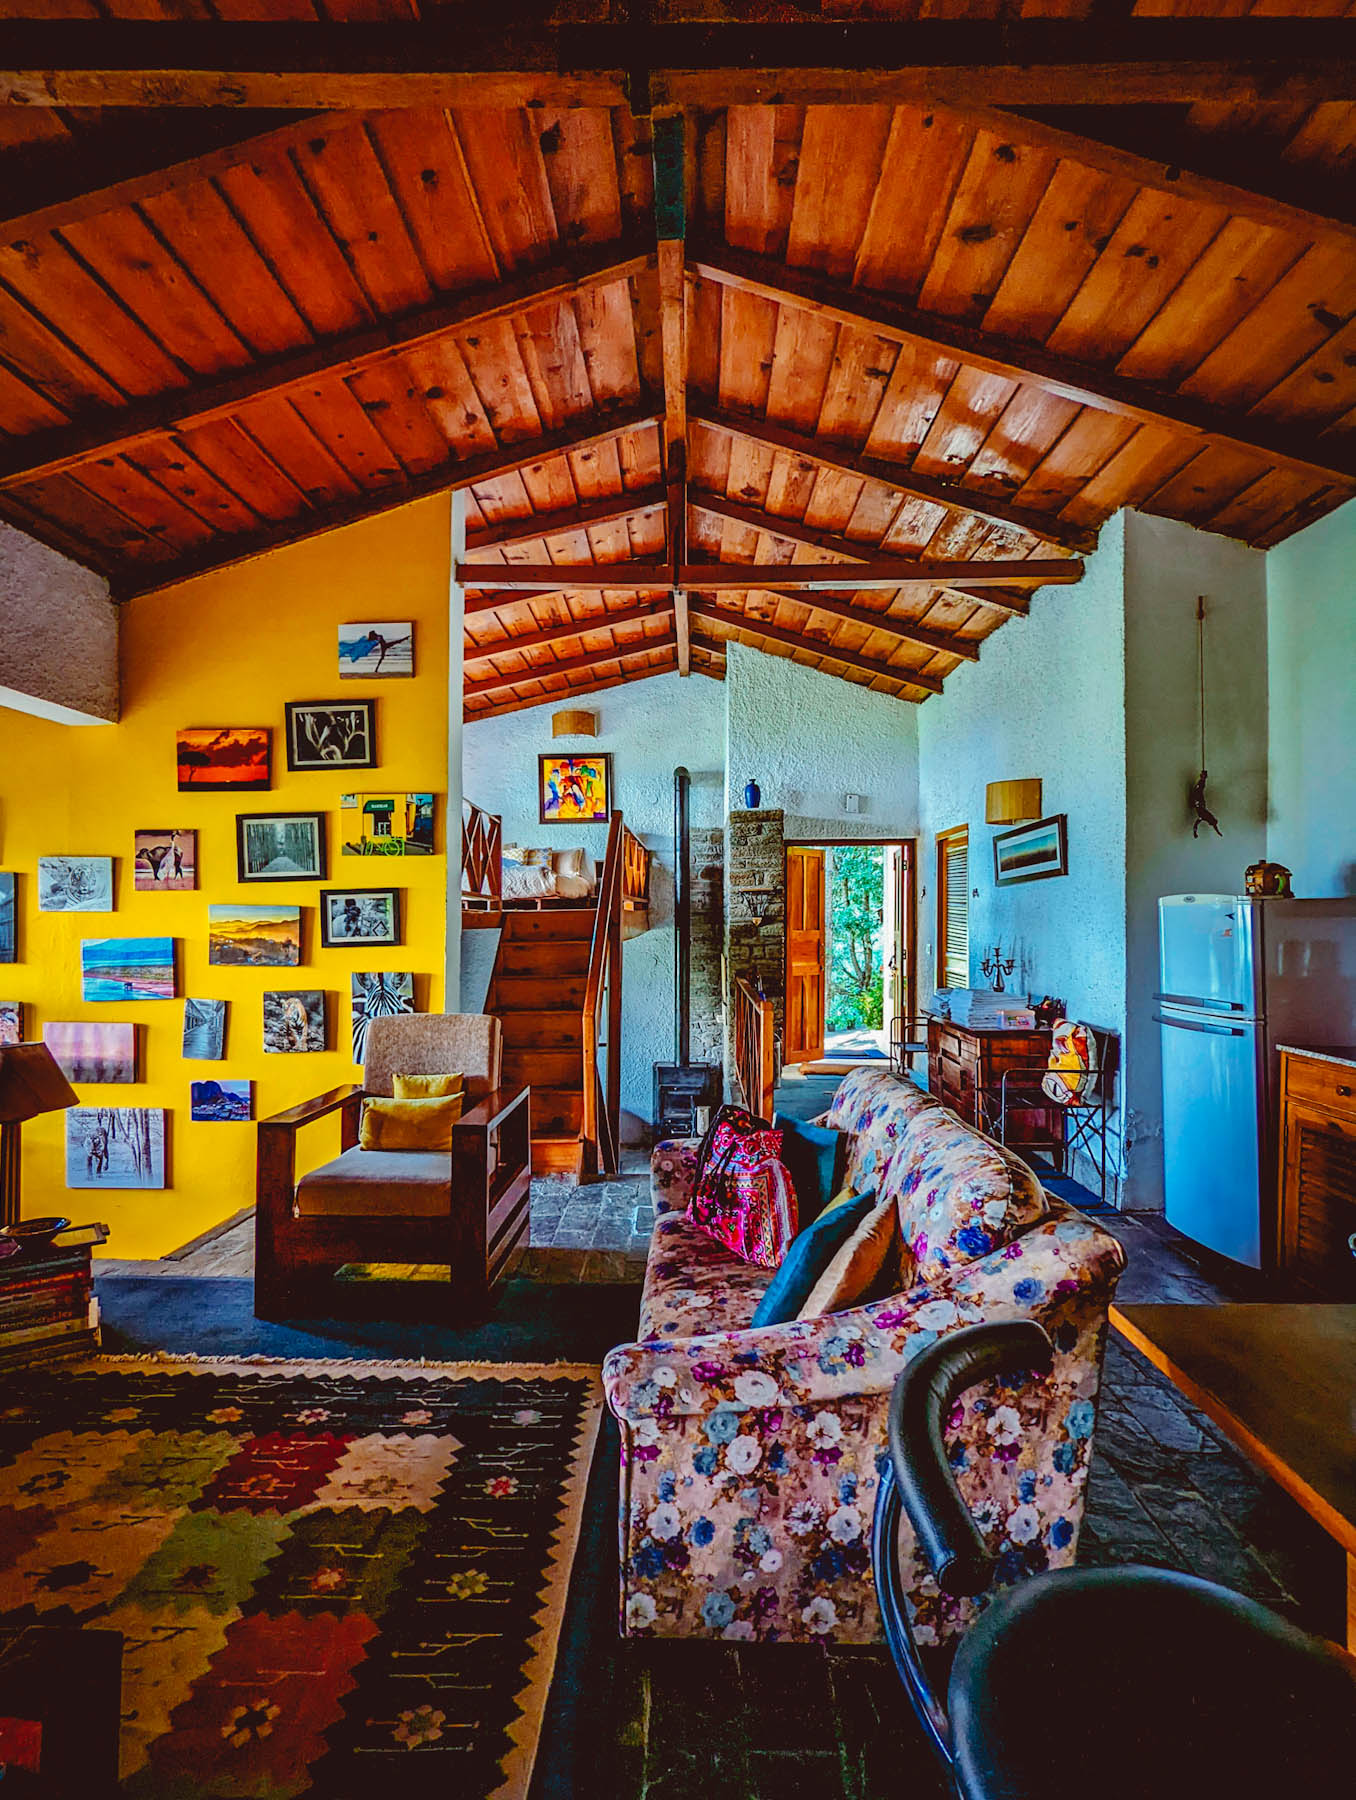 mukteshwar, airbnb cottage, rajat sethi, uttarakhand, iris cottage, eyesfordestinations, uttarakhand cottage, uttarakhand homestay, naina redhu, naina, travel blogger, travel photographer, professional photographer, hospitality professional